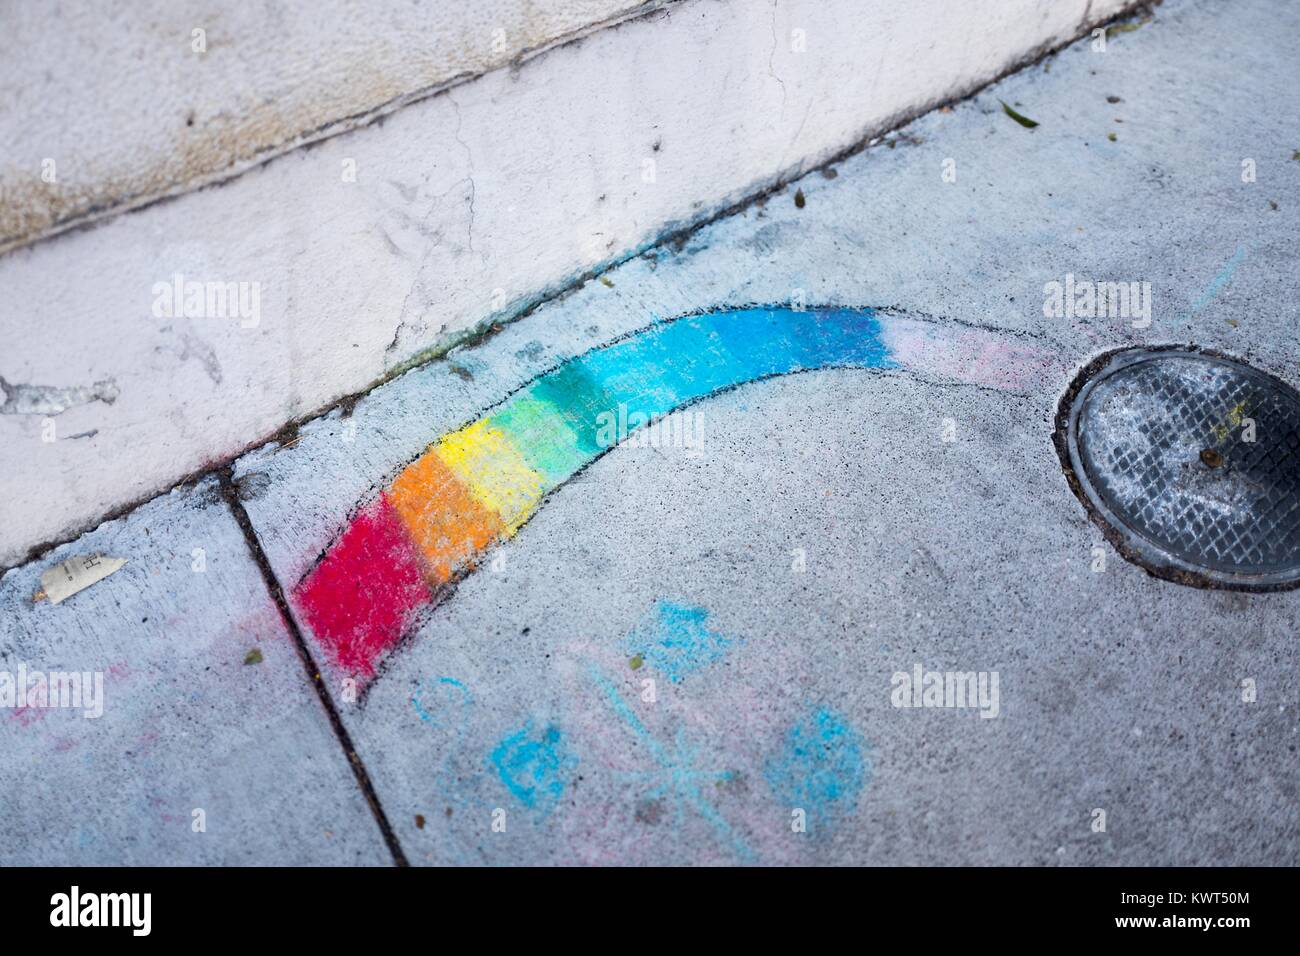 Die Gourmet Ghetto (Norden Shattuck) Nachbarschaft von Berkeley, Kalifornien, jemand sidewalk Chalk verwendet hat ein Regenbogen auf dem Bürgersteig zu zeichnen, ein Symbol sowohl der Hippiebewegung und der LGBT-Rechte, 6. Oktober 2017. () Stockfoto